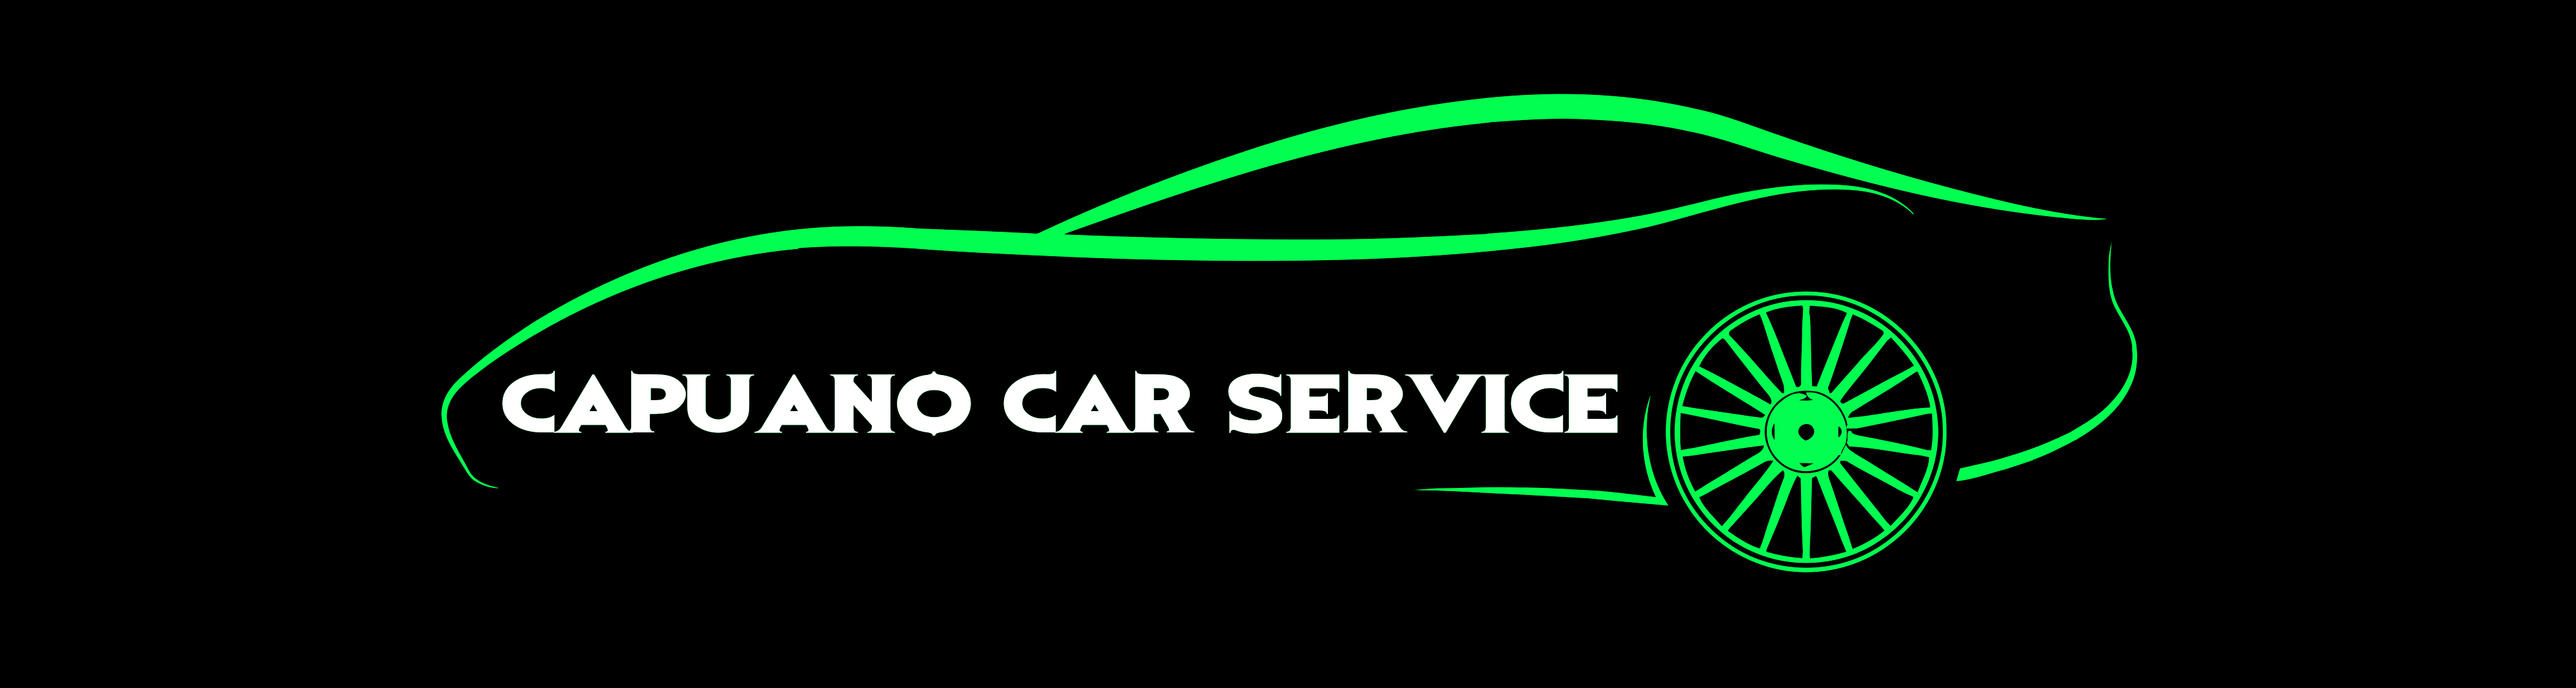 Capuano Car Service S.r.l